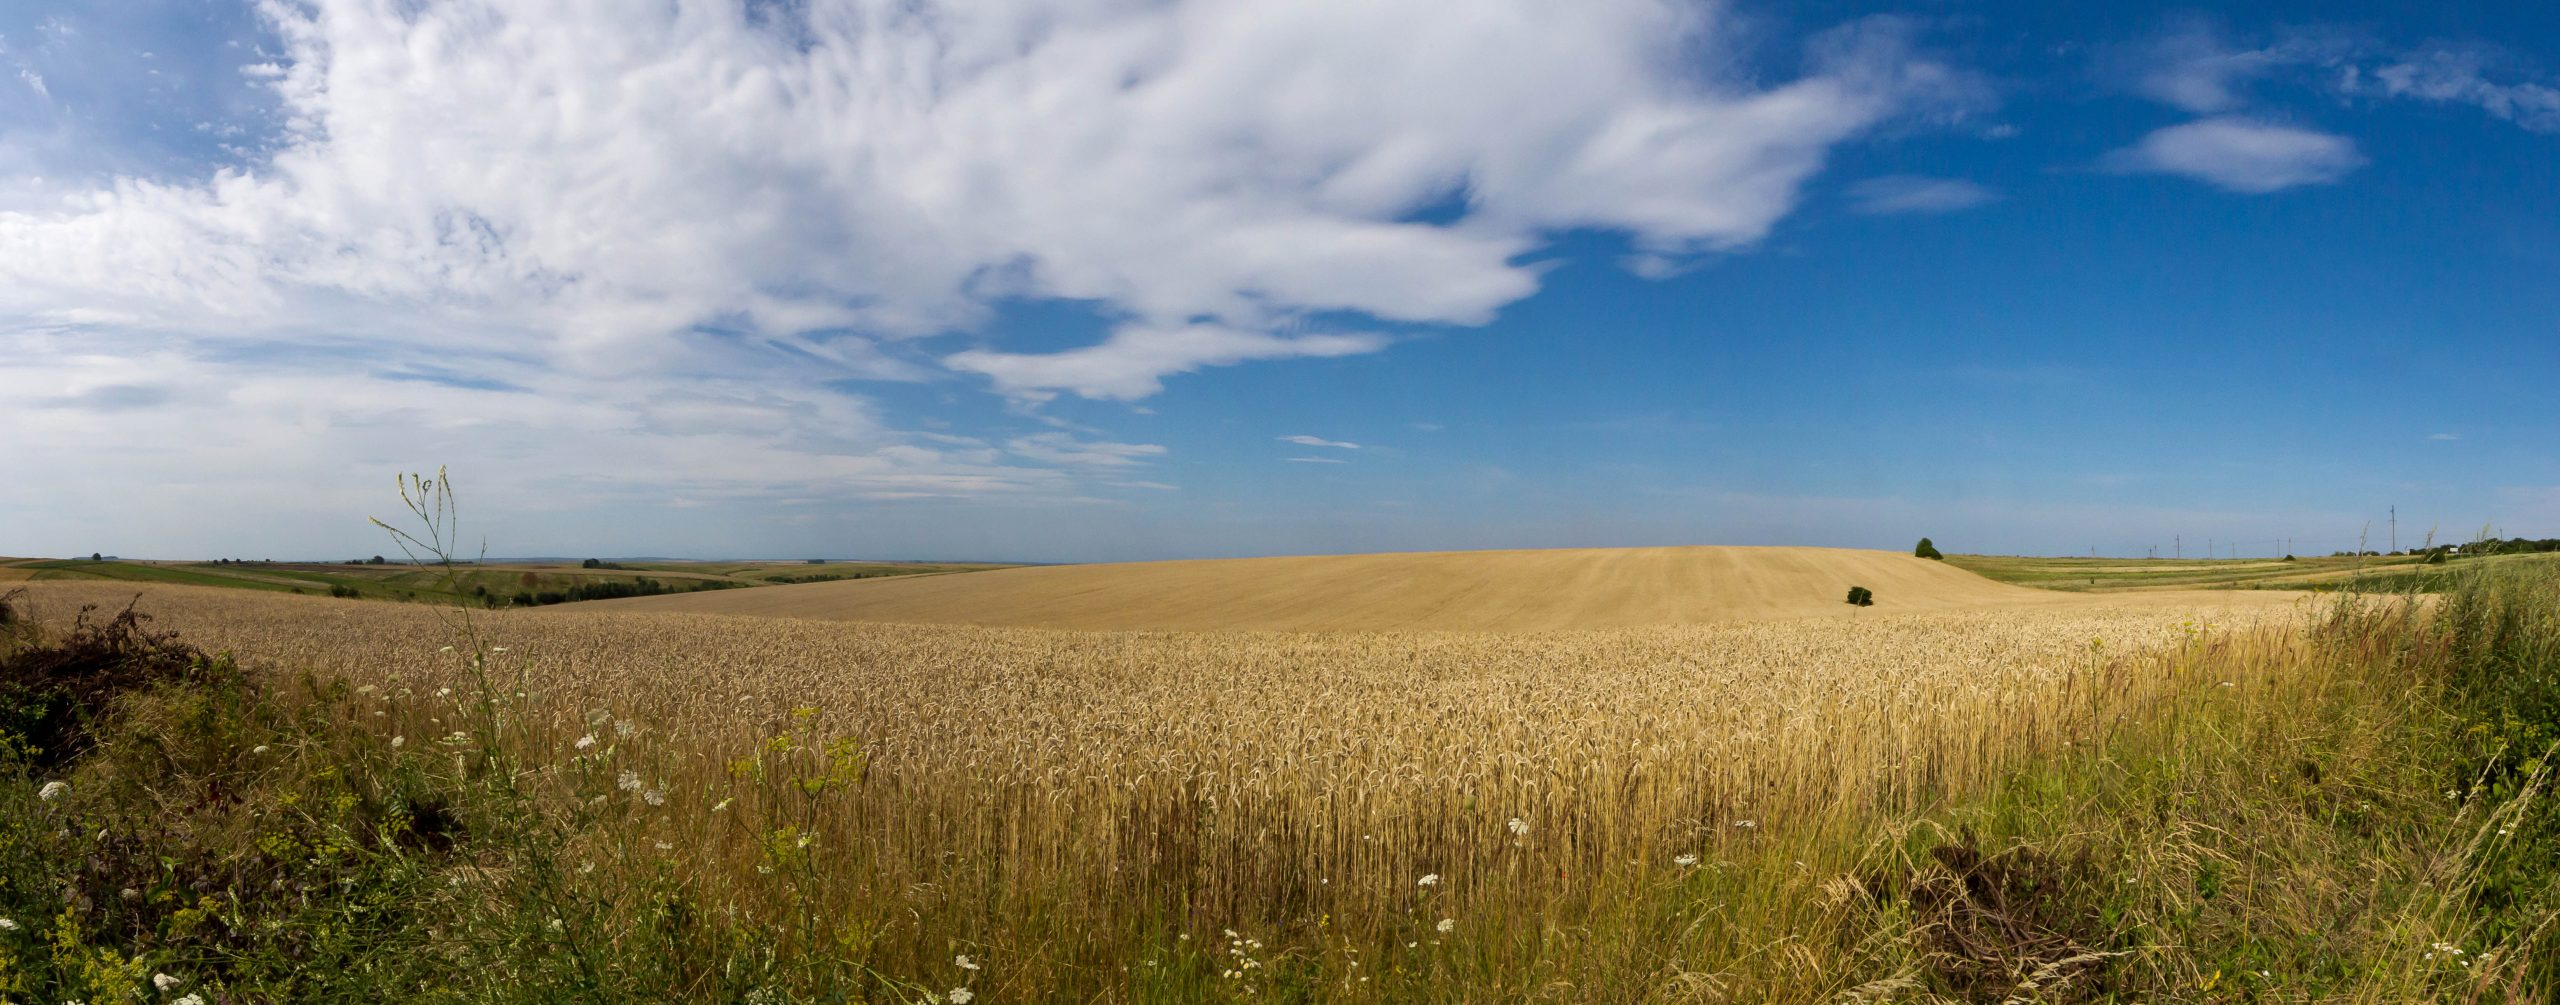 L’Ukraine, puissance agricole au futur encore incertain